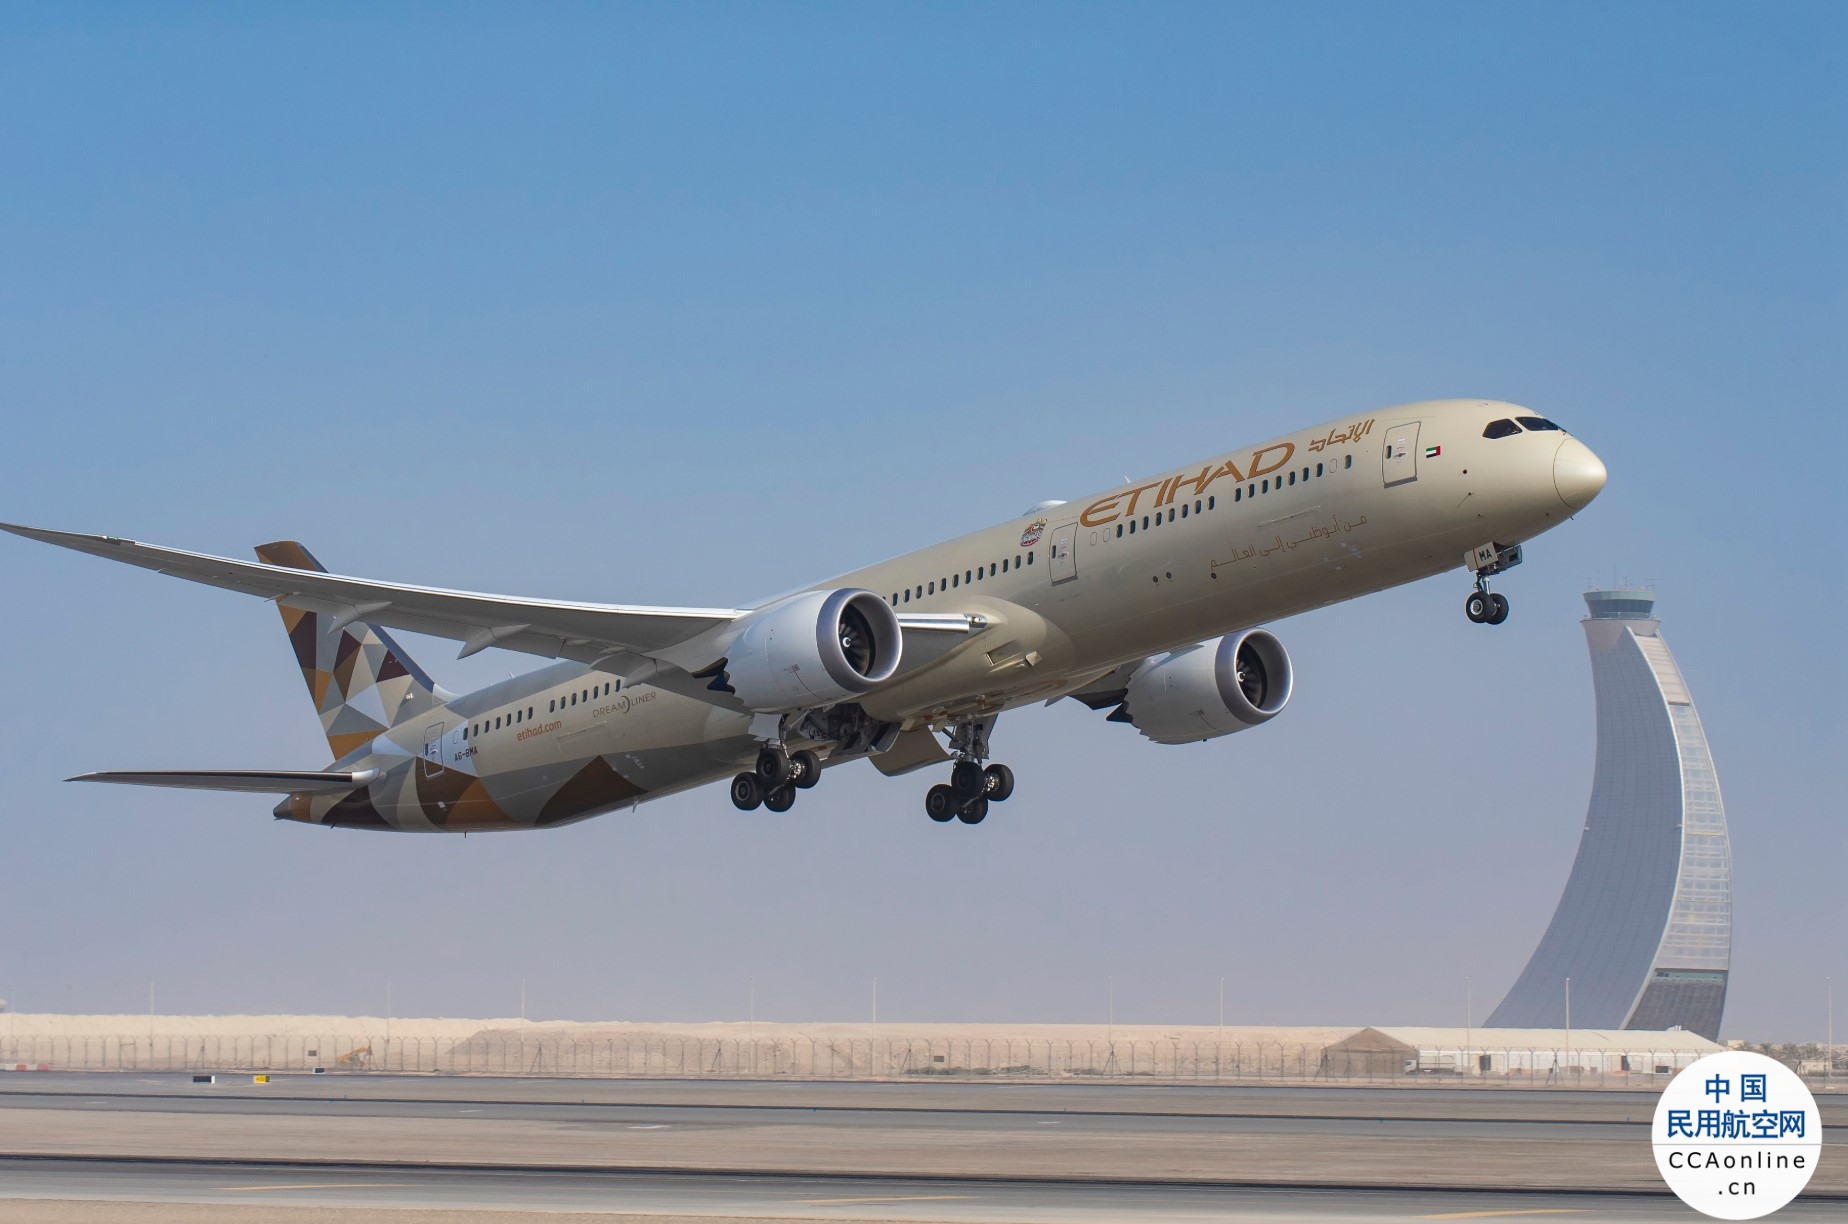 阿提哈德航空预计未来六周将迎来超过150万名旅客